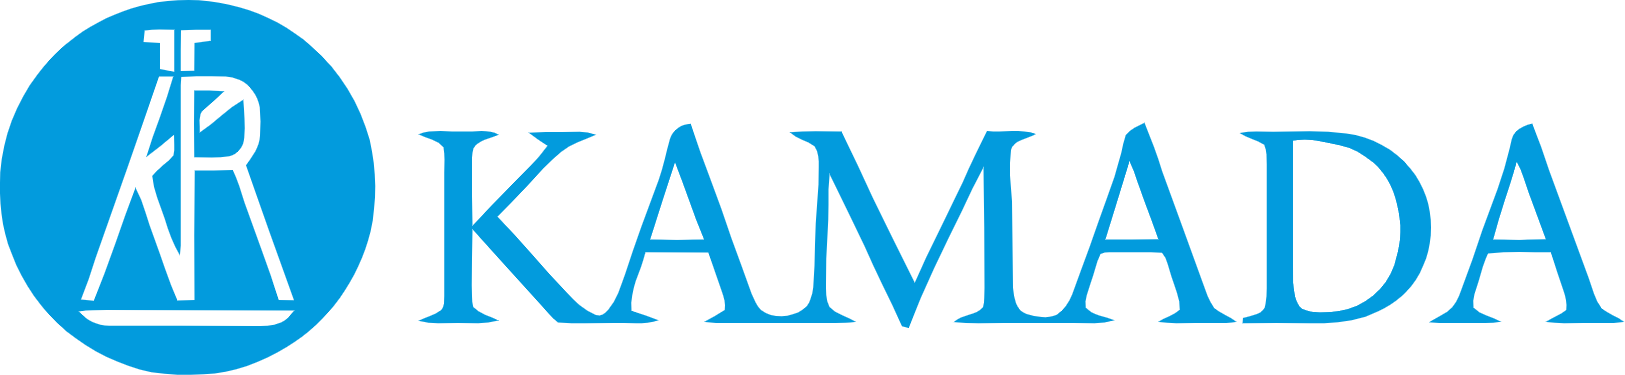 Kamada
 logo large (transparent PNG)